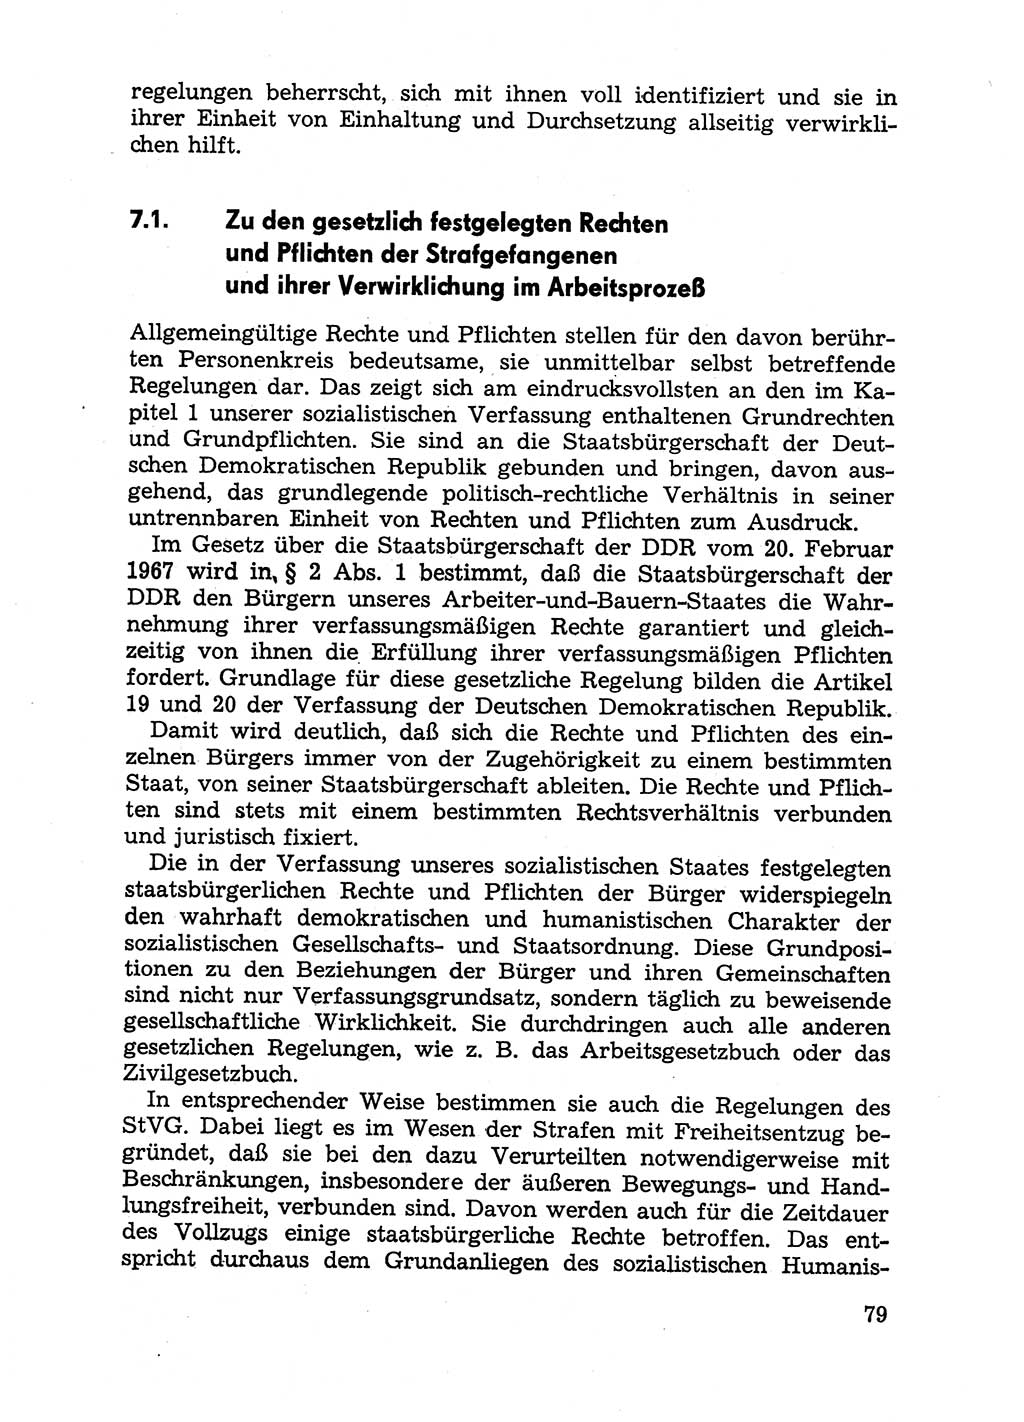 Handbuch für Betriebsangehörige, Abteilung Strafvollzug (SV) [Ministerium des Innern (MdI) Deutsche Demokratische Republik (DDR)] 1981, Seite 79 (Hb. BA Abt. SV MdI DDR 1981, S. 79)